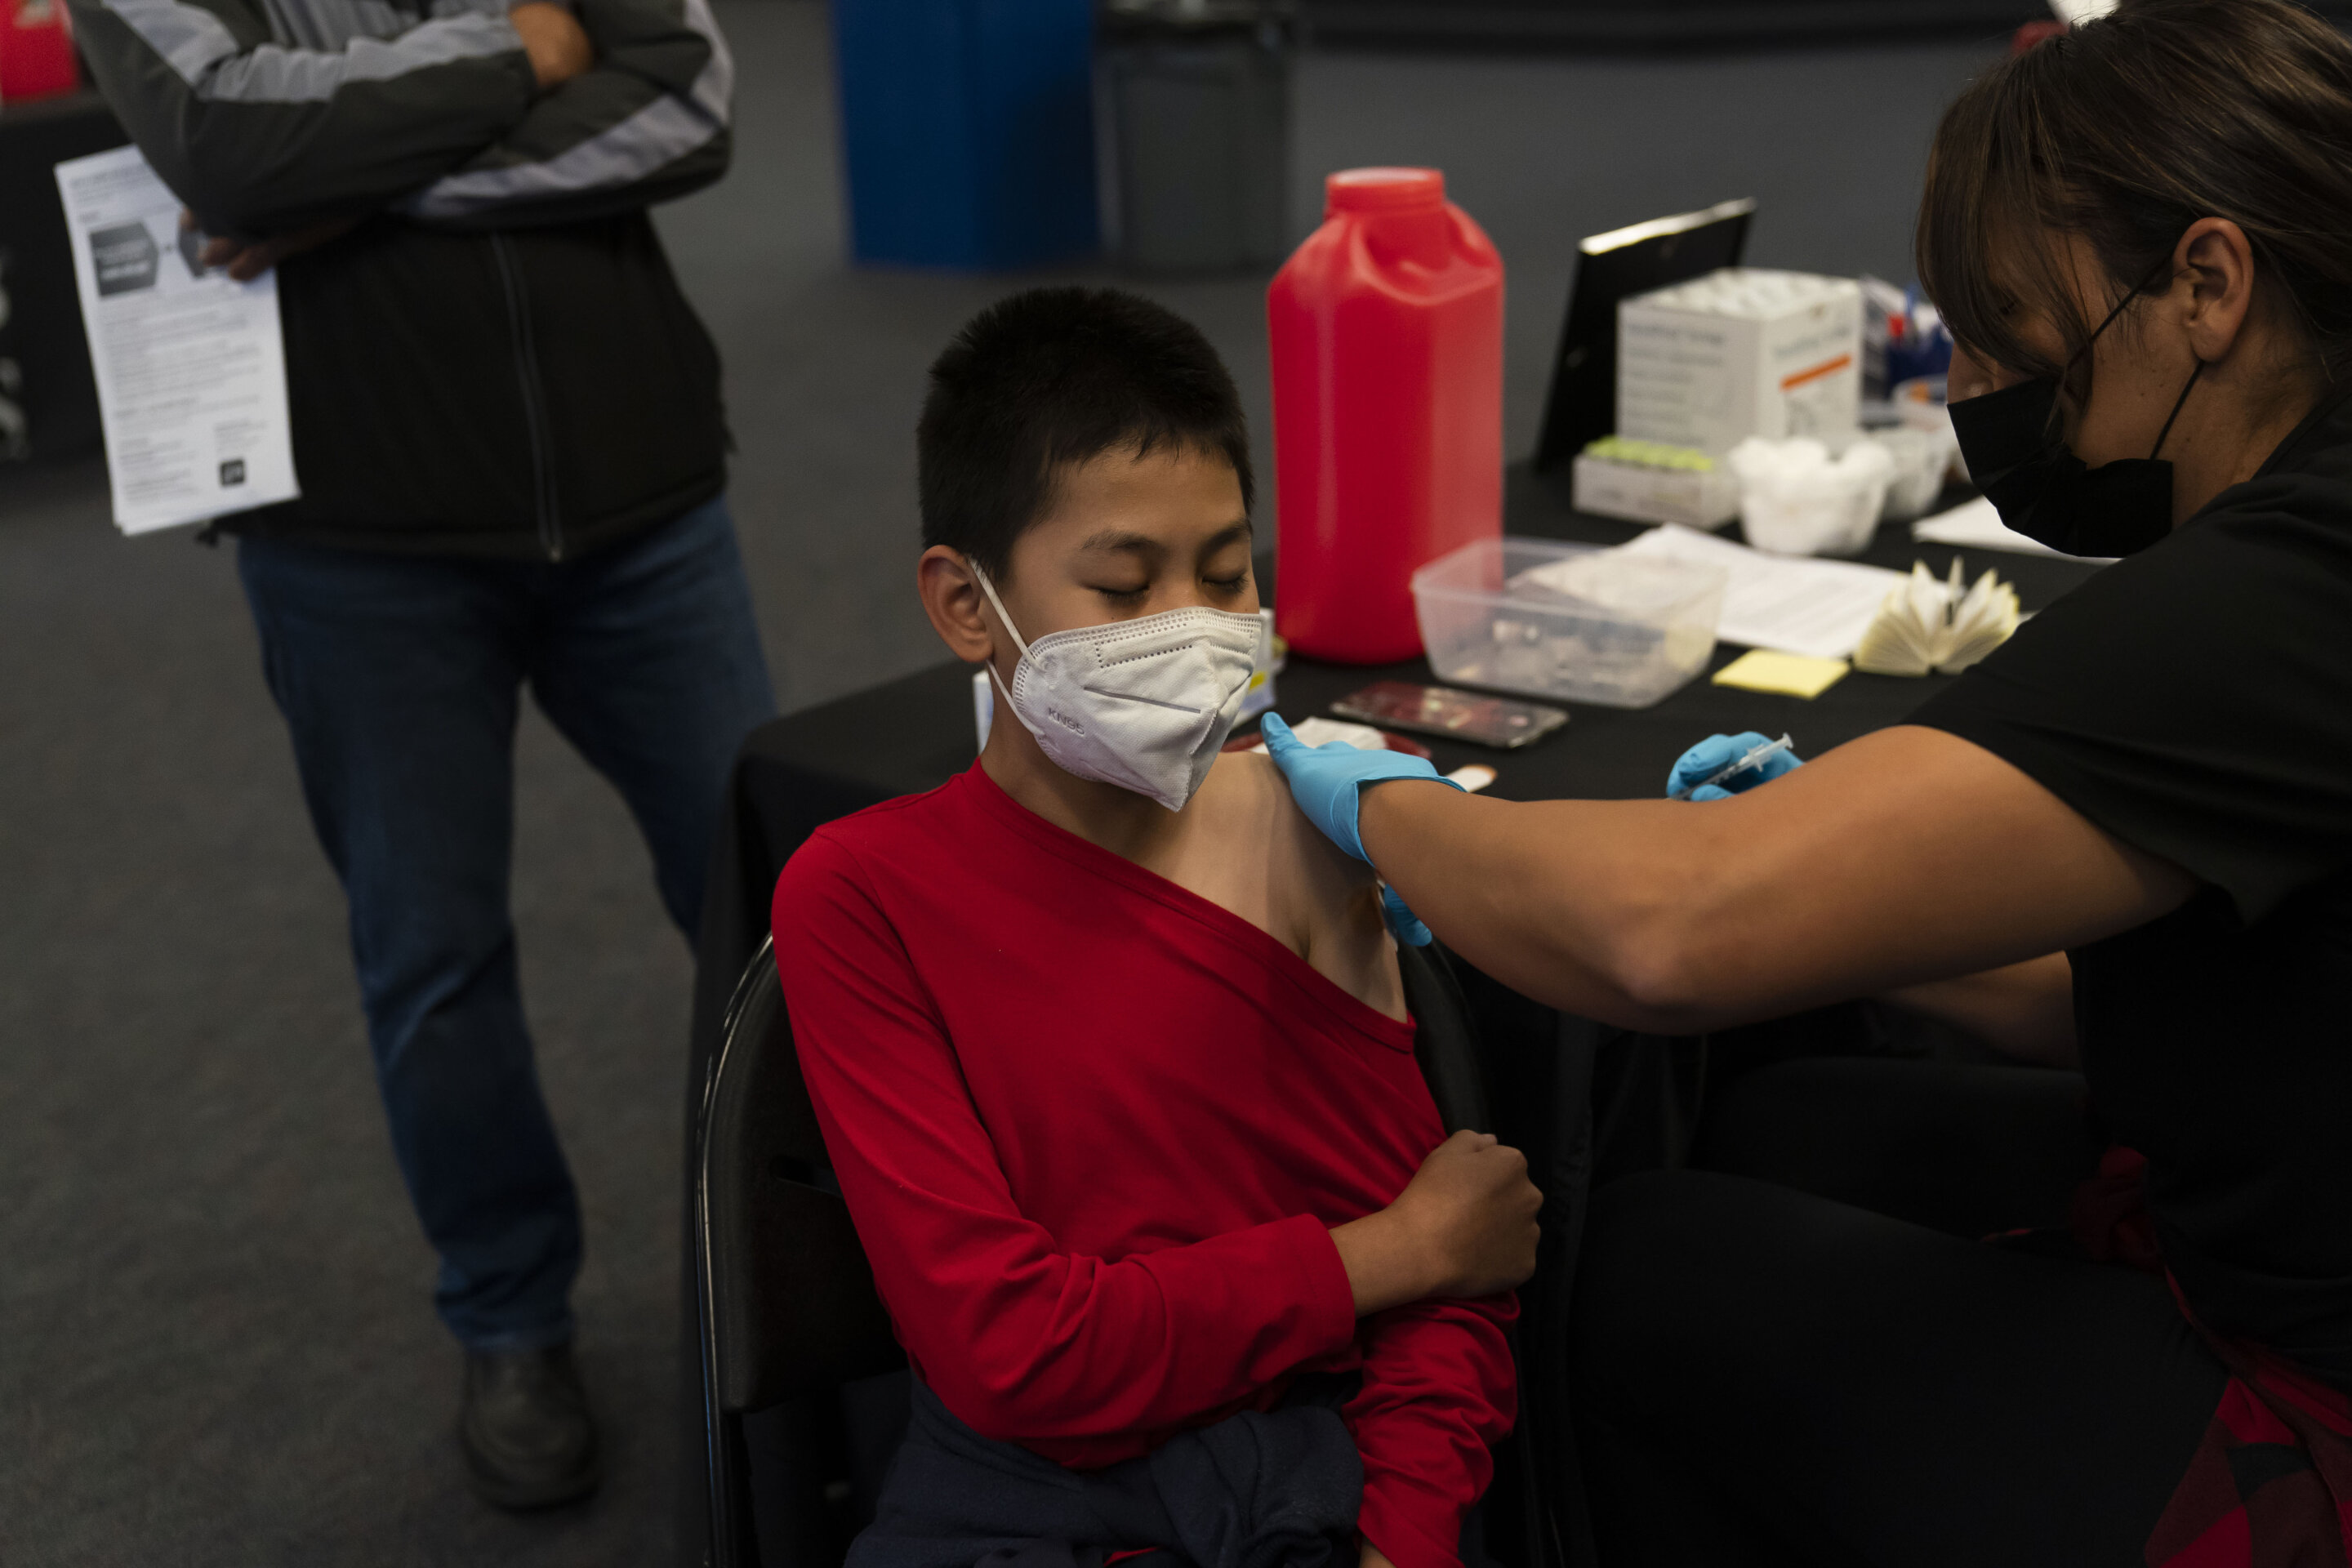 #California won’t require COVID vaccine to attend schools